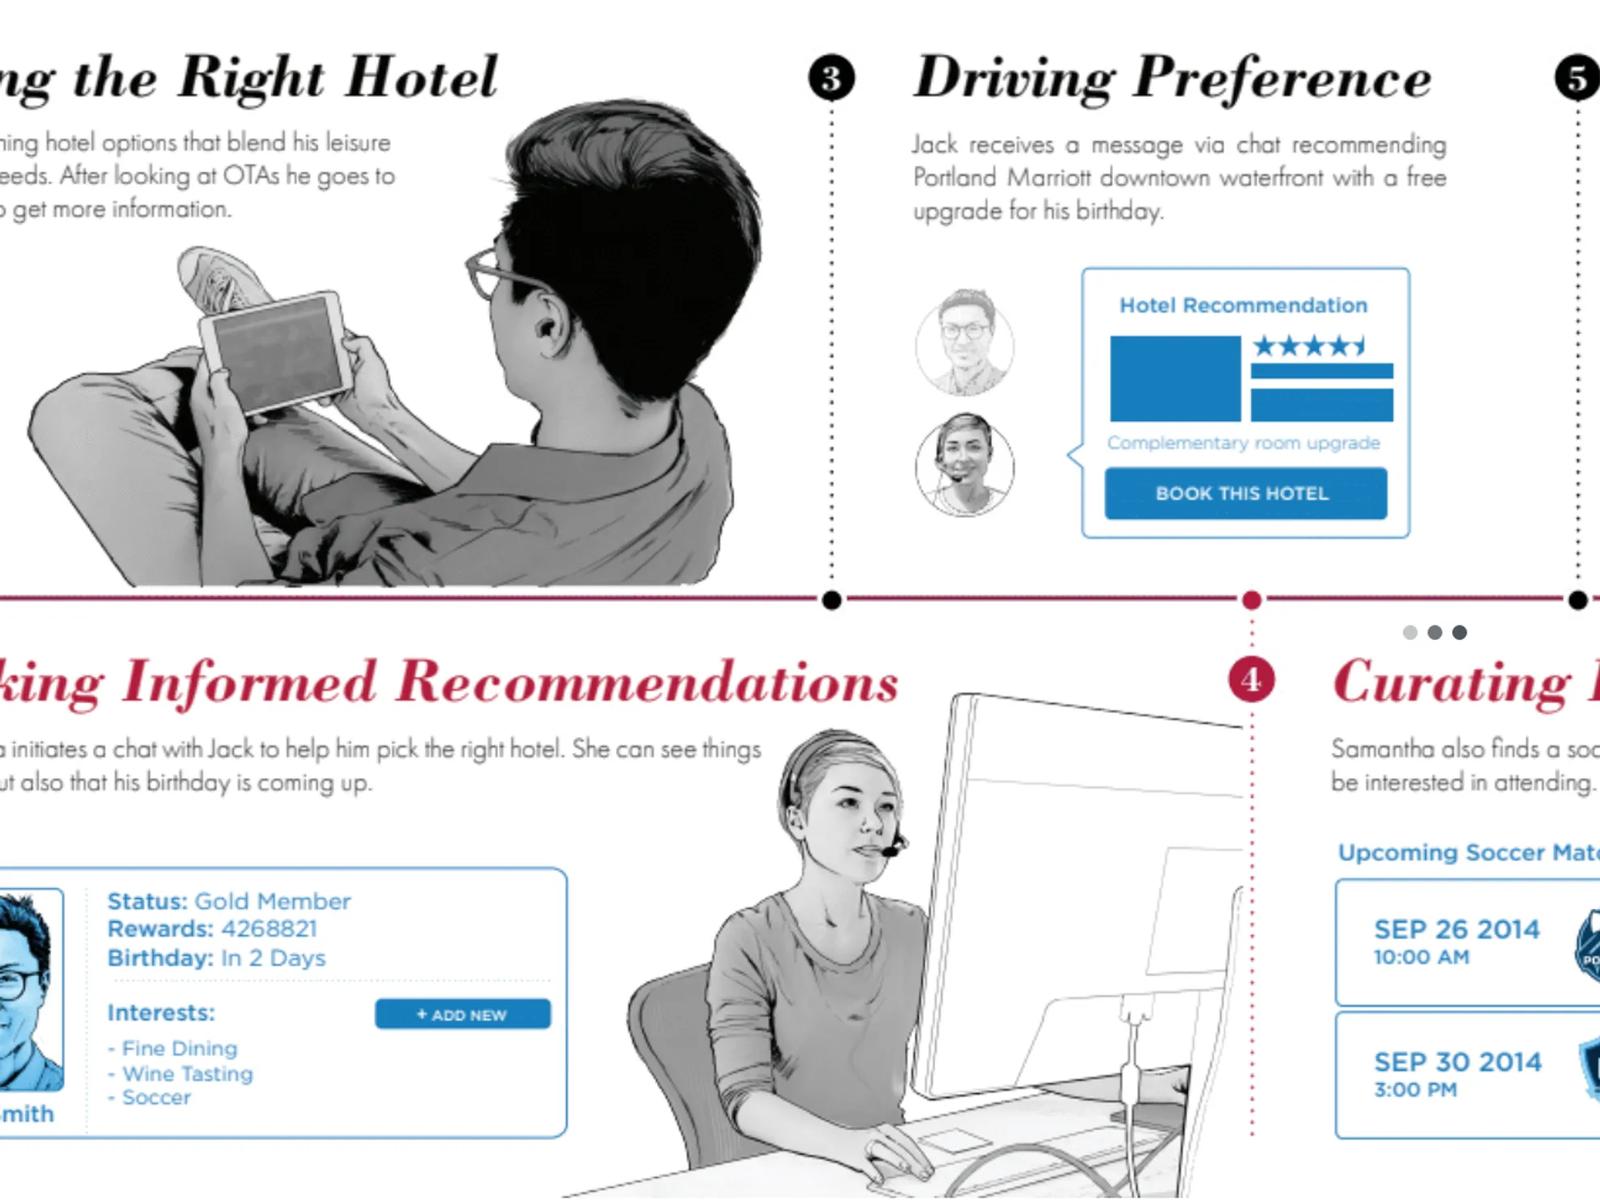 Marriott Hotels: Digital Transformation